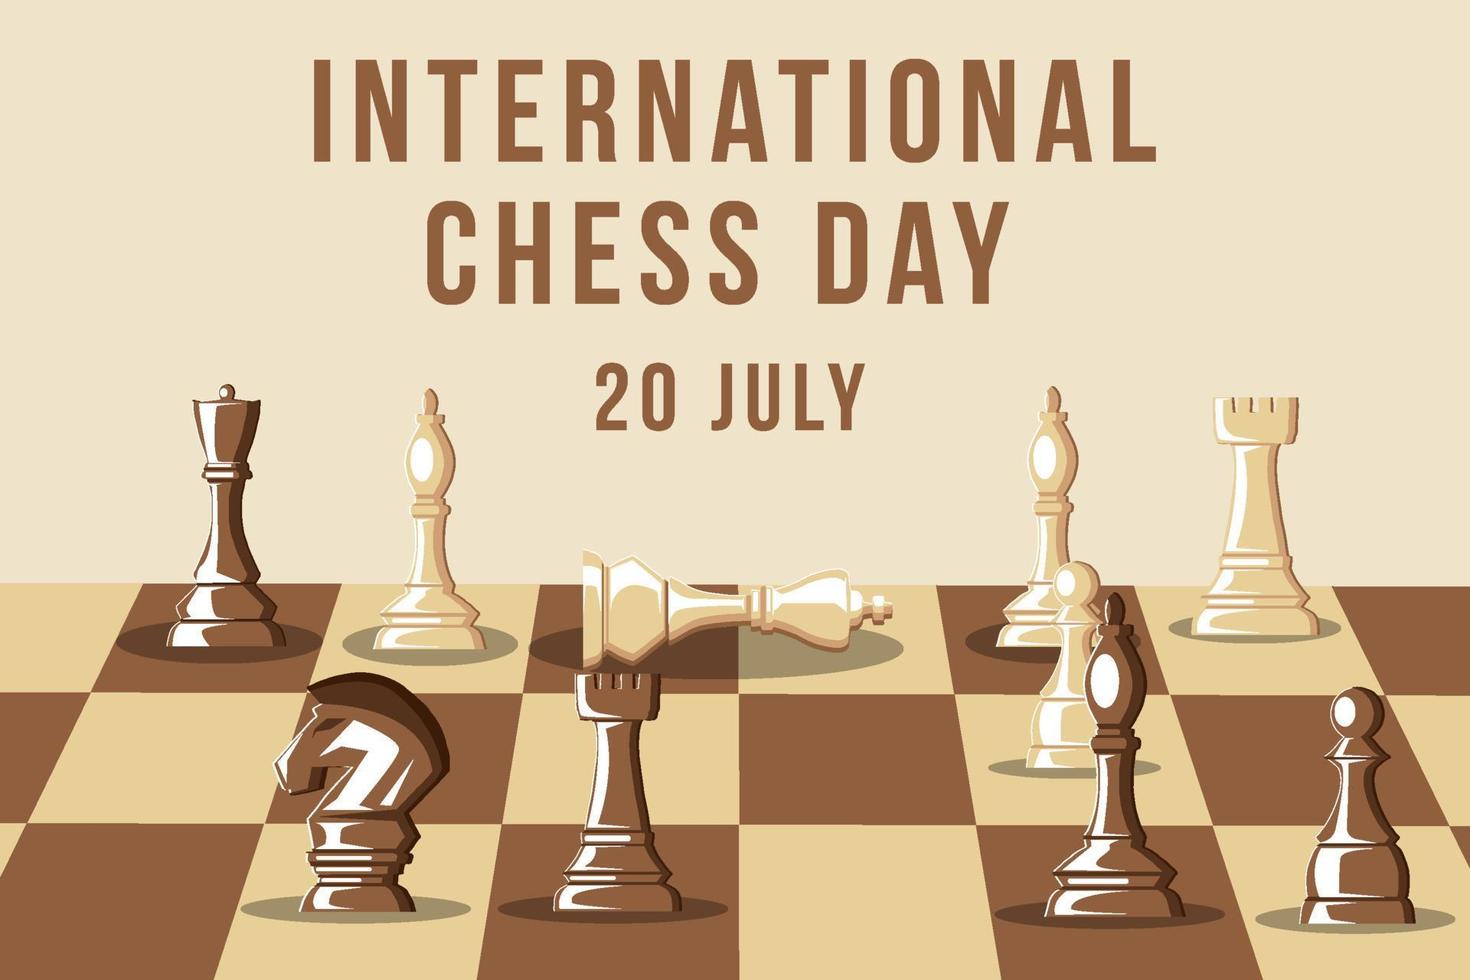 journée internationale des échecs avec illustration de la position d'échec et mat vecteur